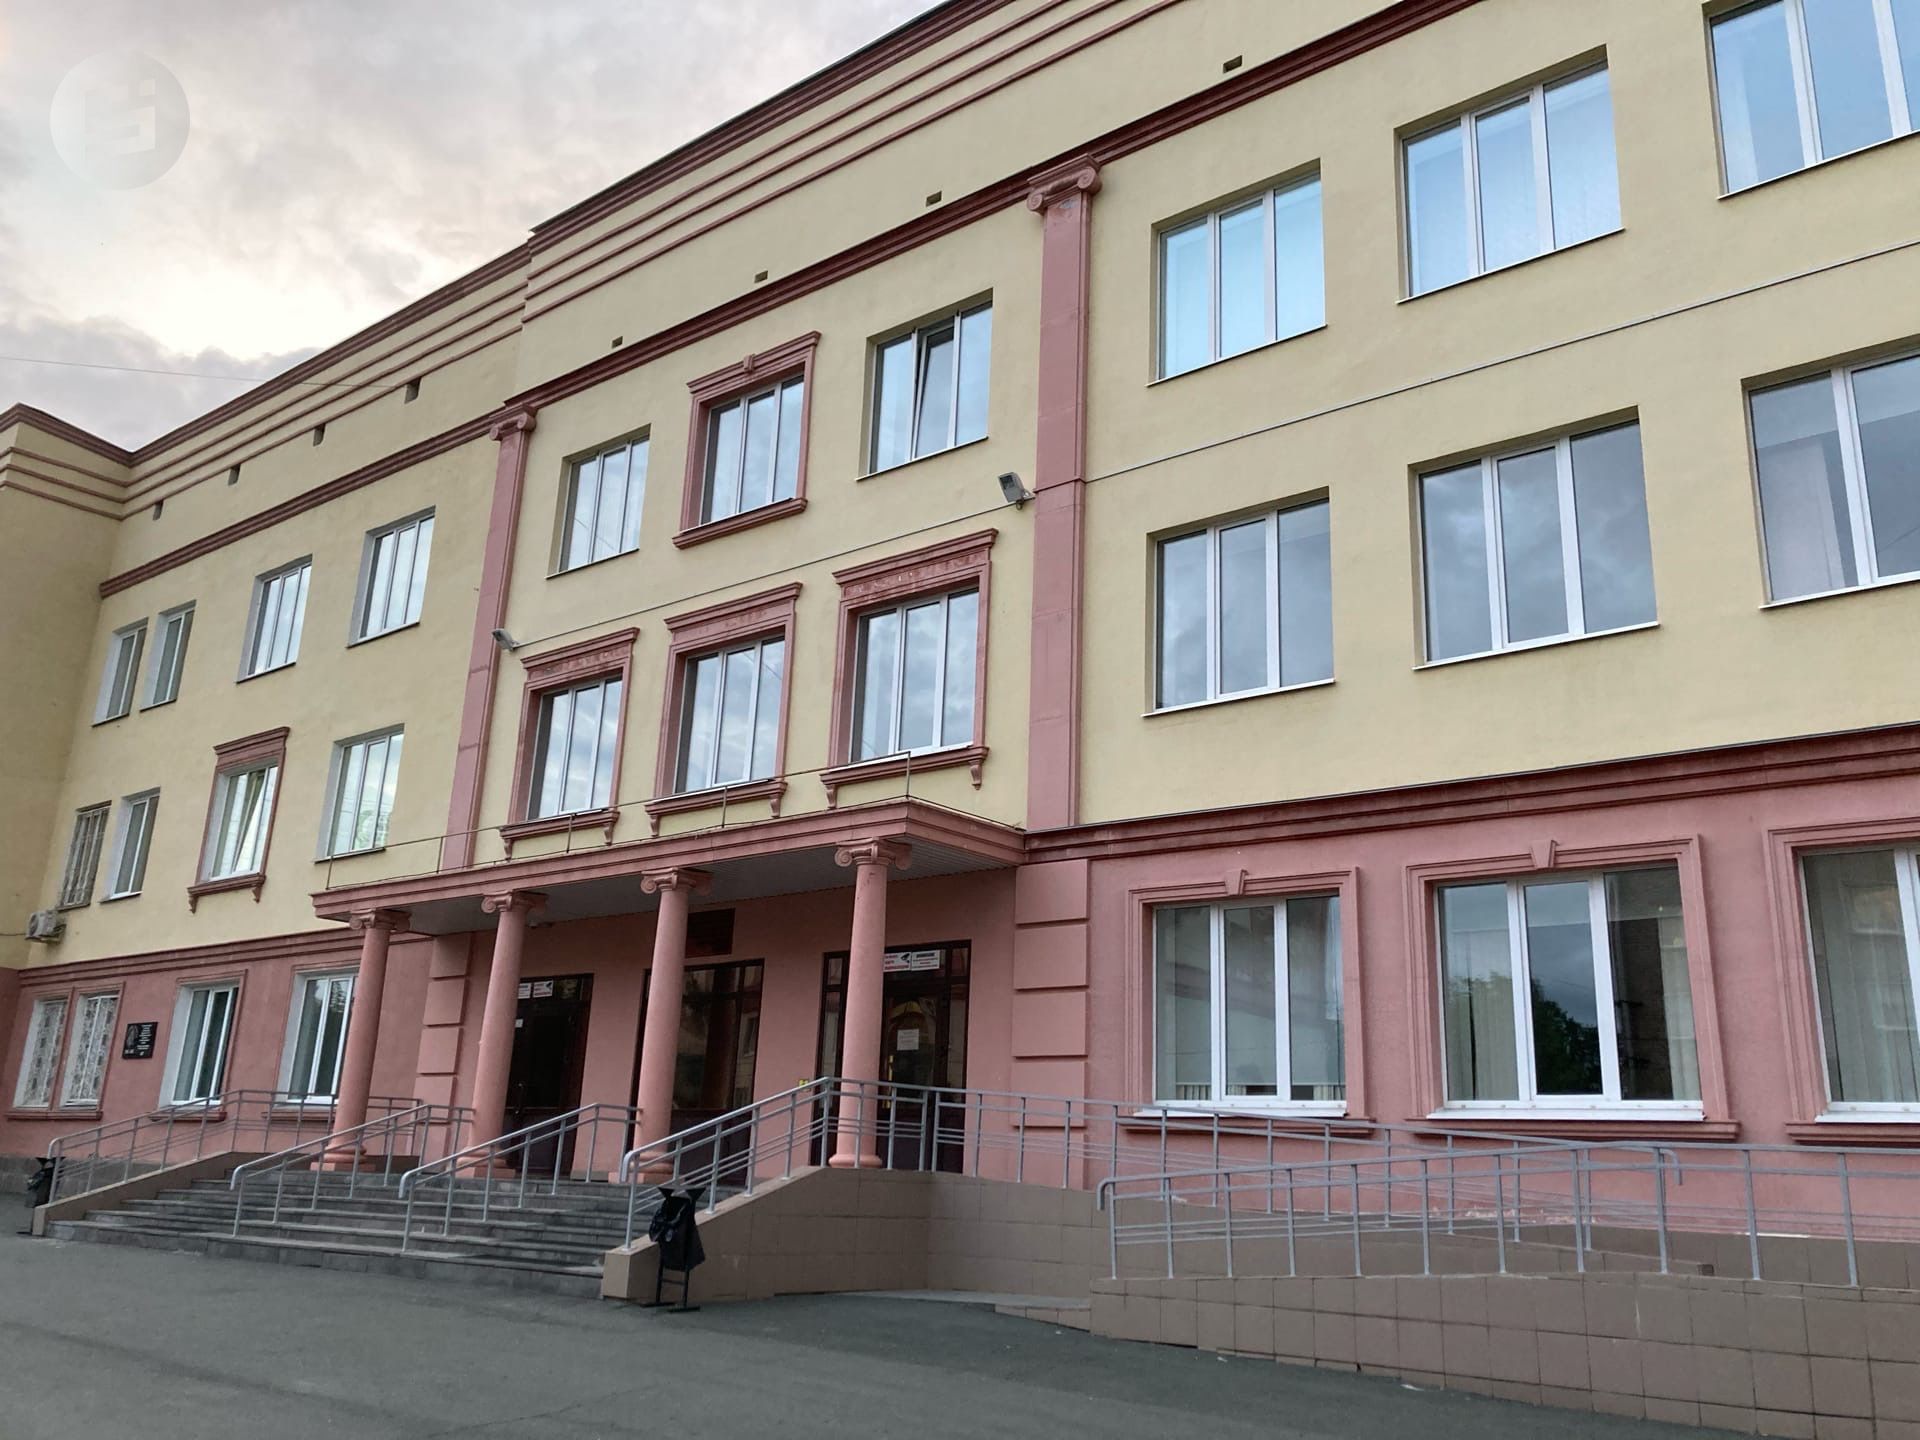 

В Удмуртии усилят меры безопасности в школах после стрельбы в Казани

